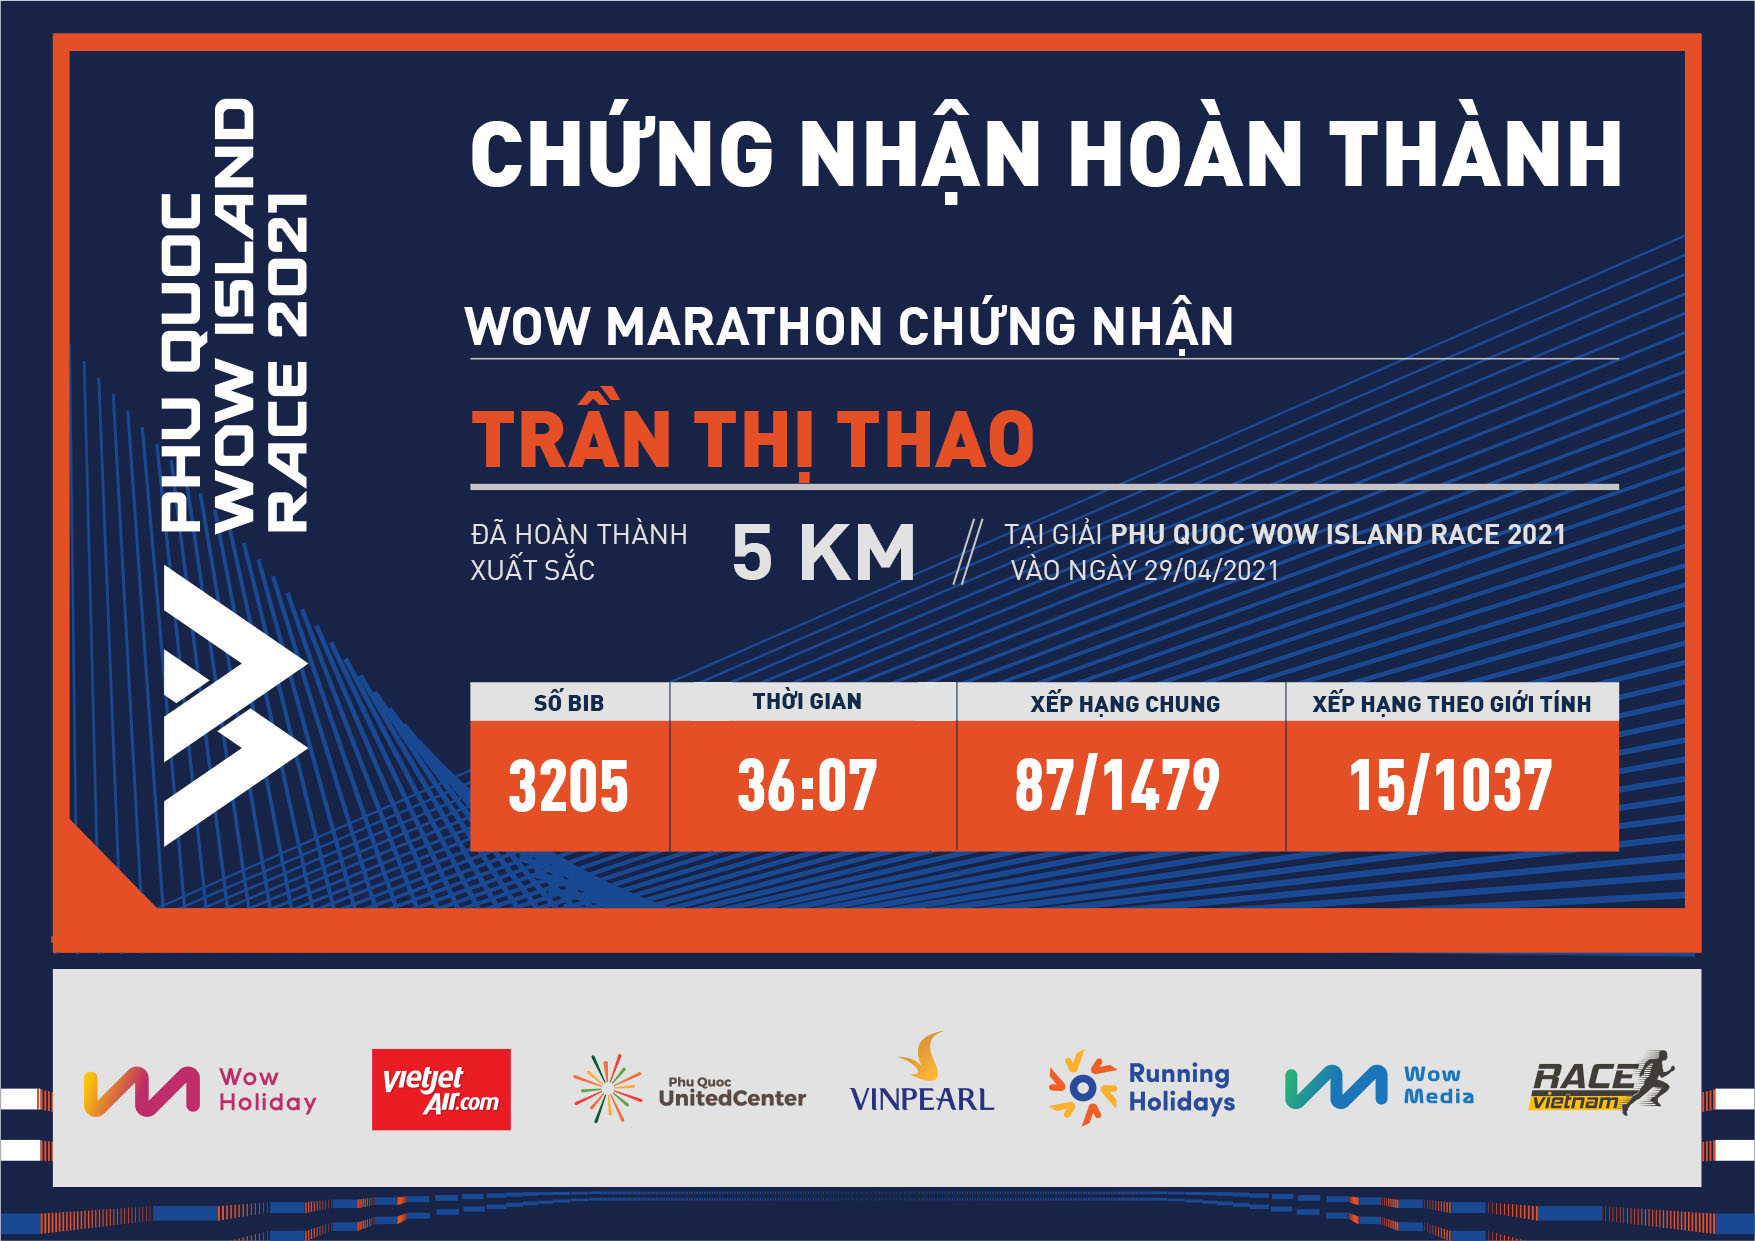 3205 - Trần Thị Thao